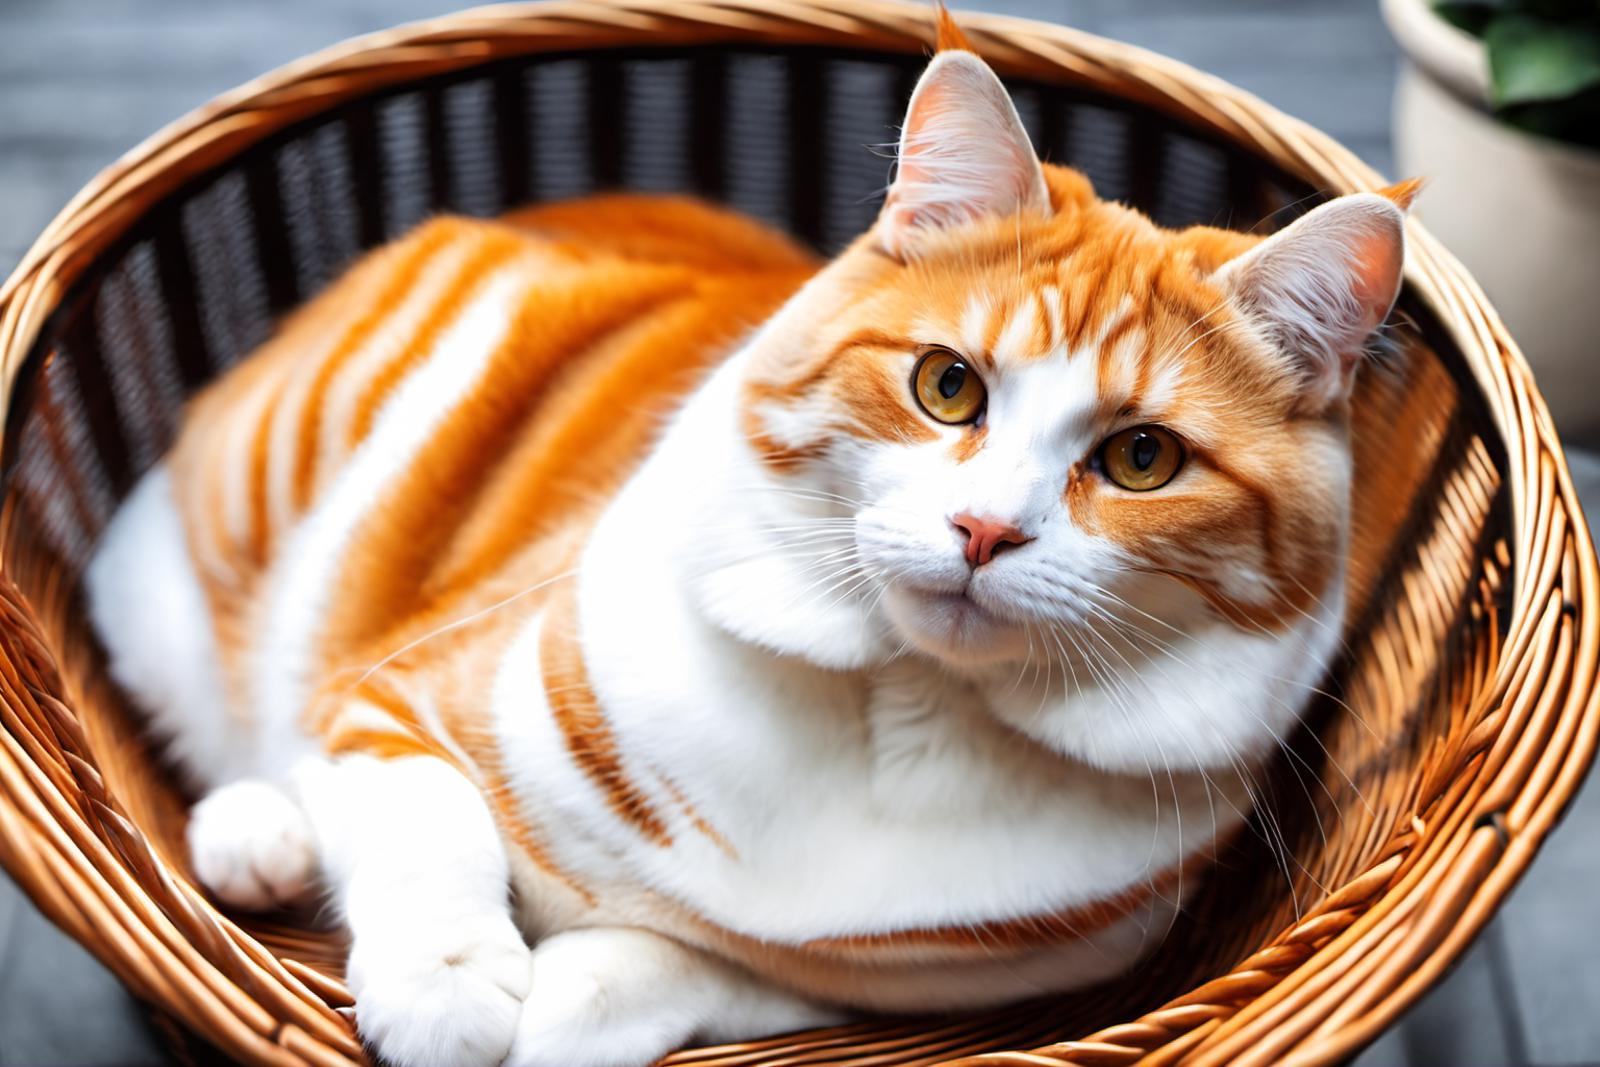 A cute orange and white cat sitting in a wicker basket.